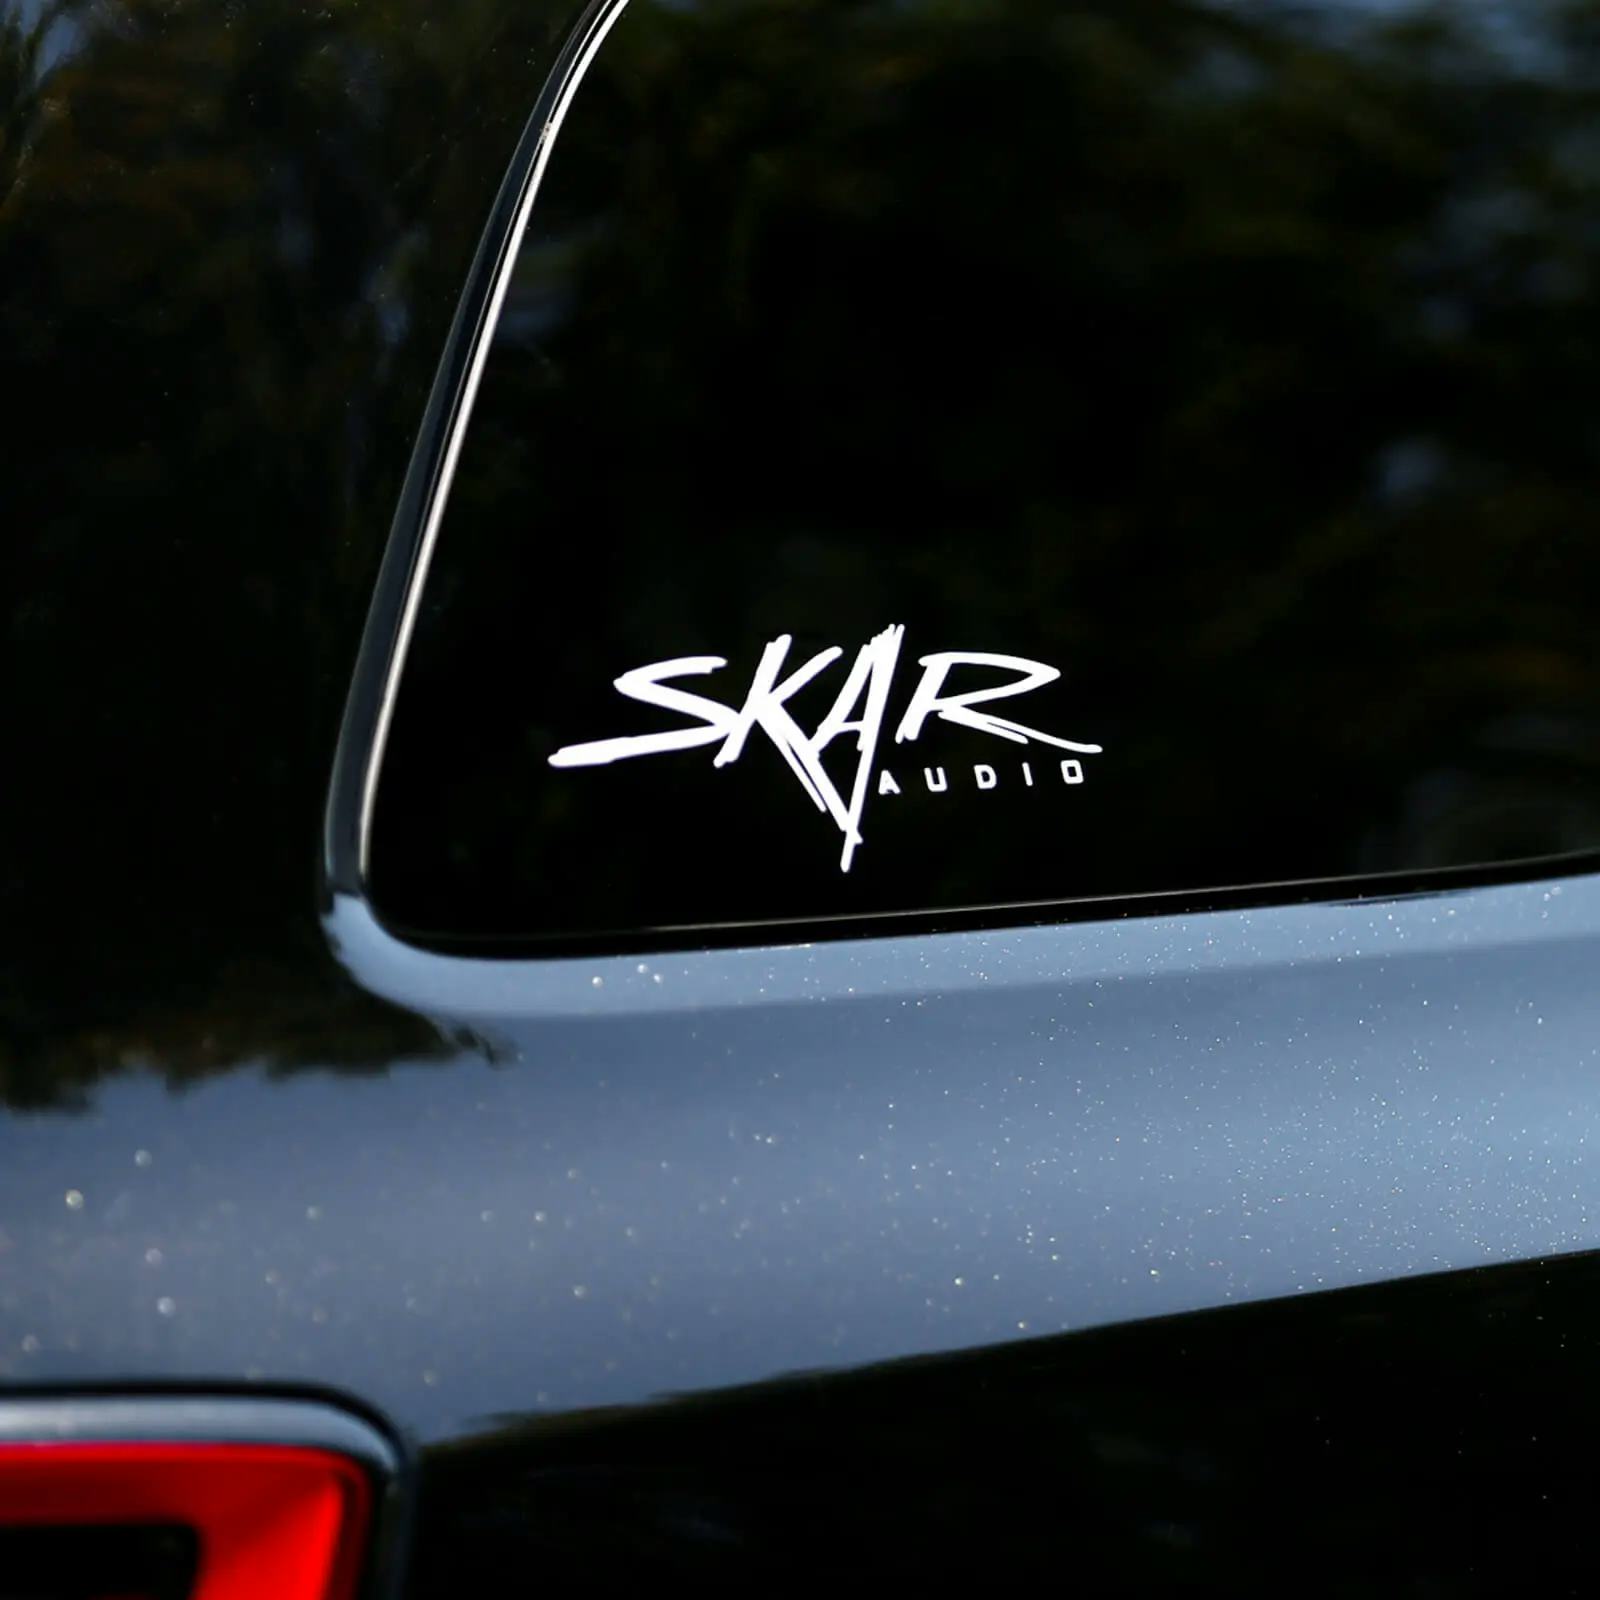 SK-DECAL-SM | 9" x 3" Small Skar Audio Logo Decal #1